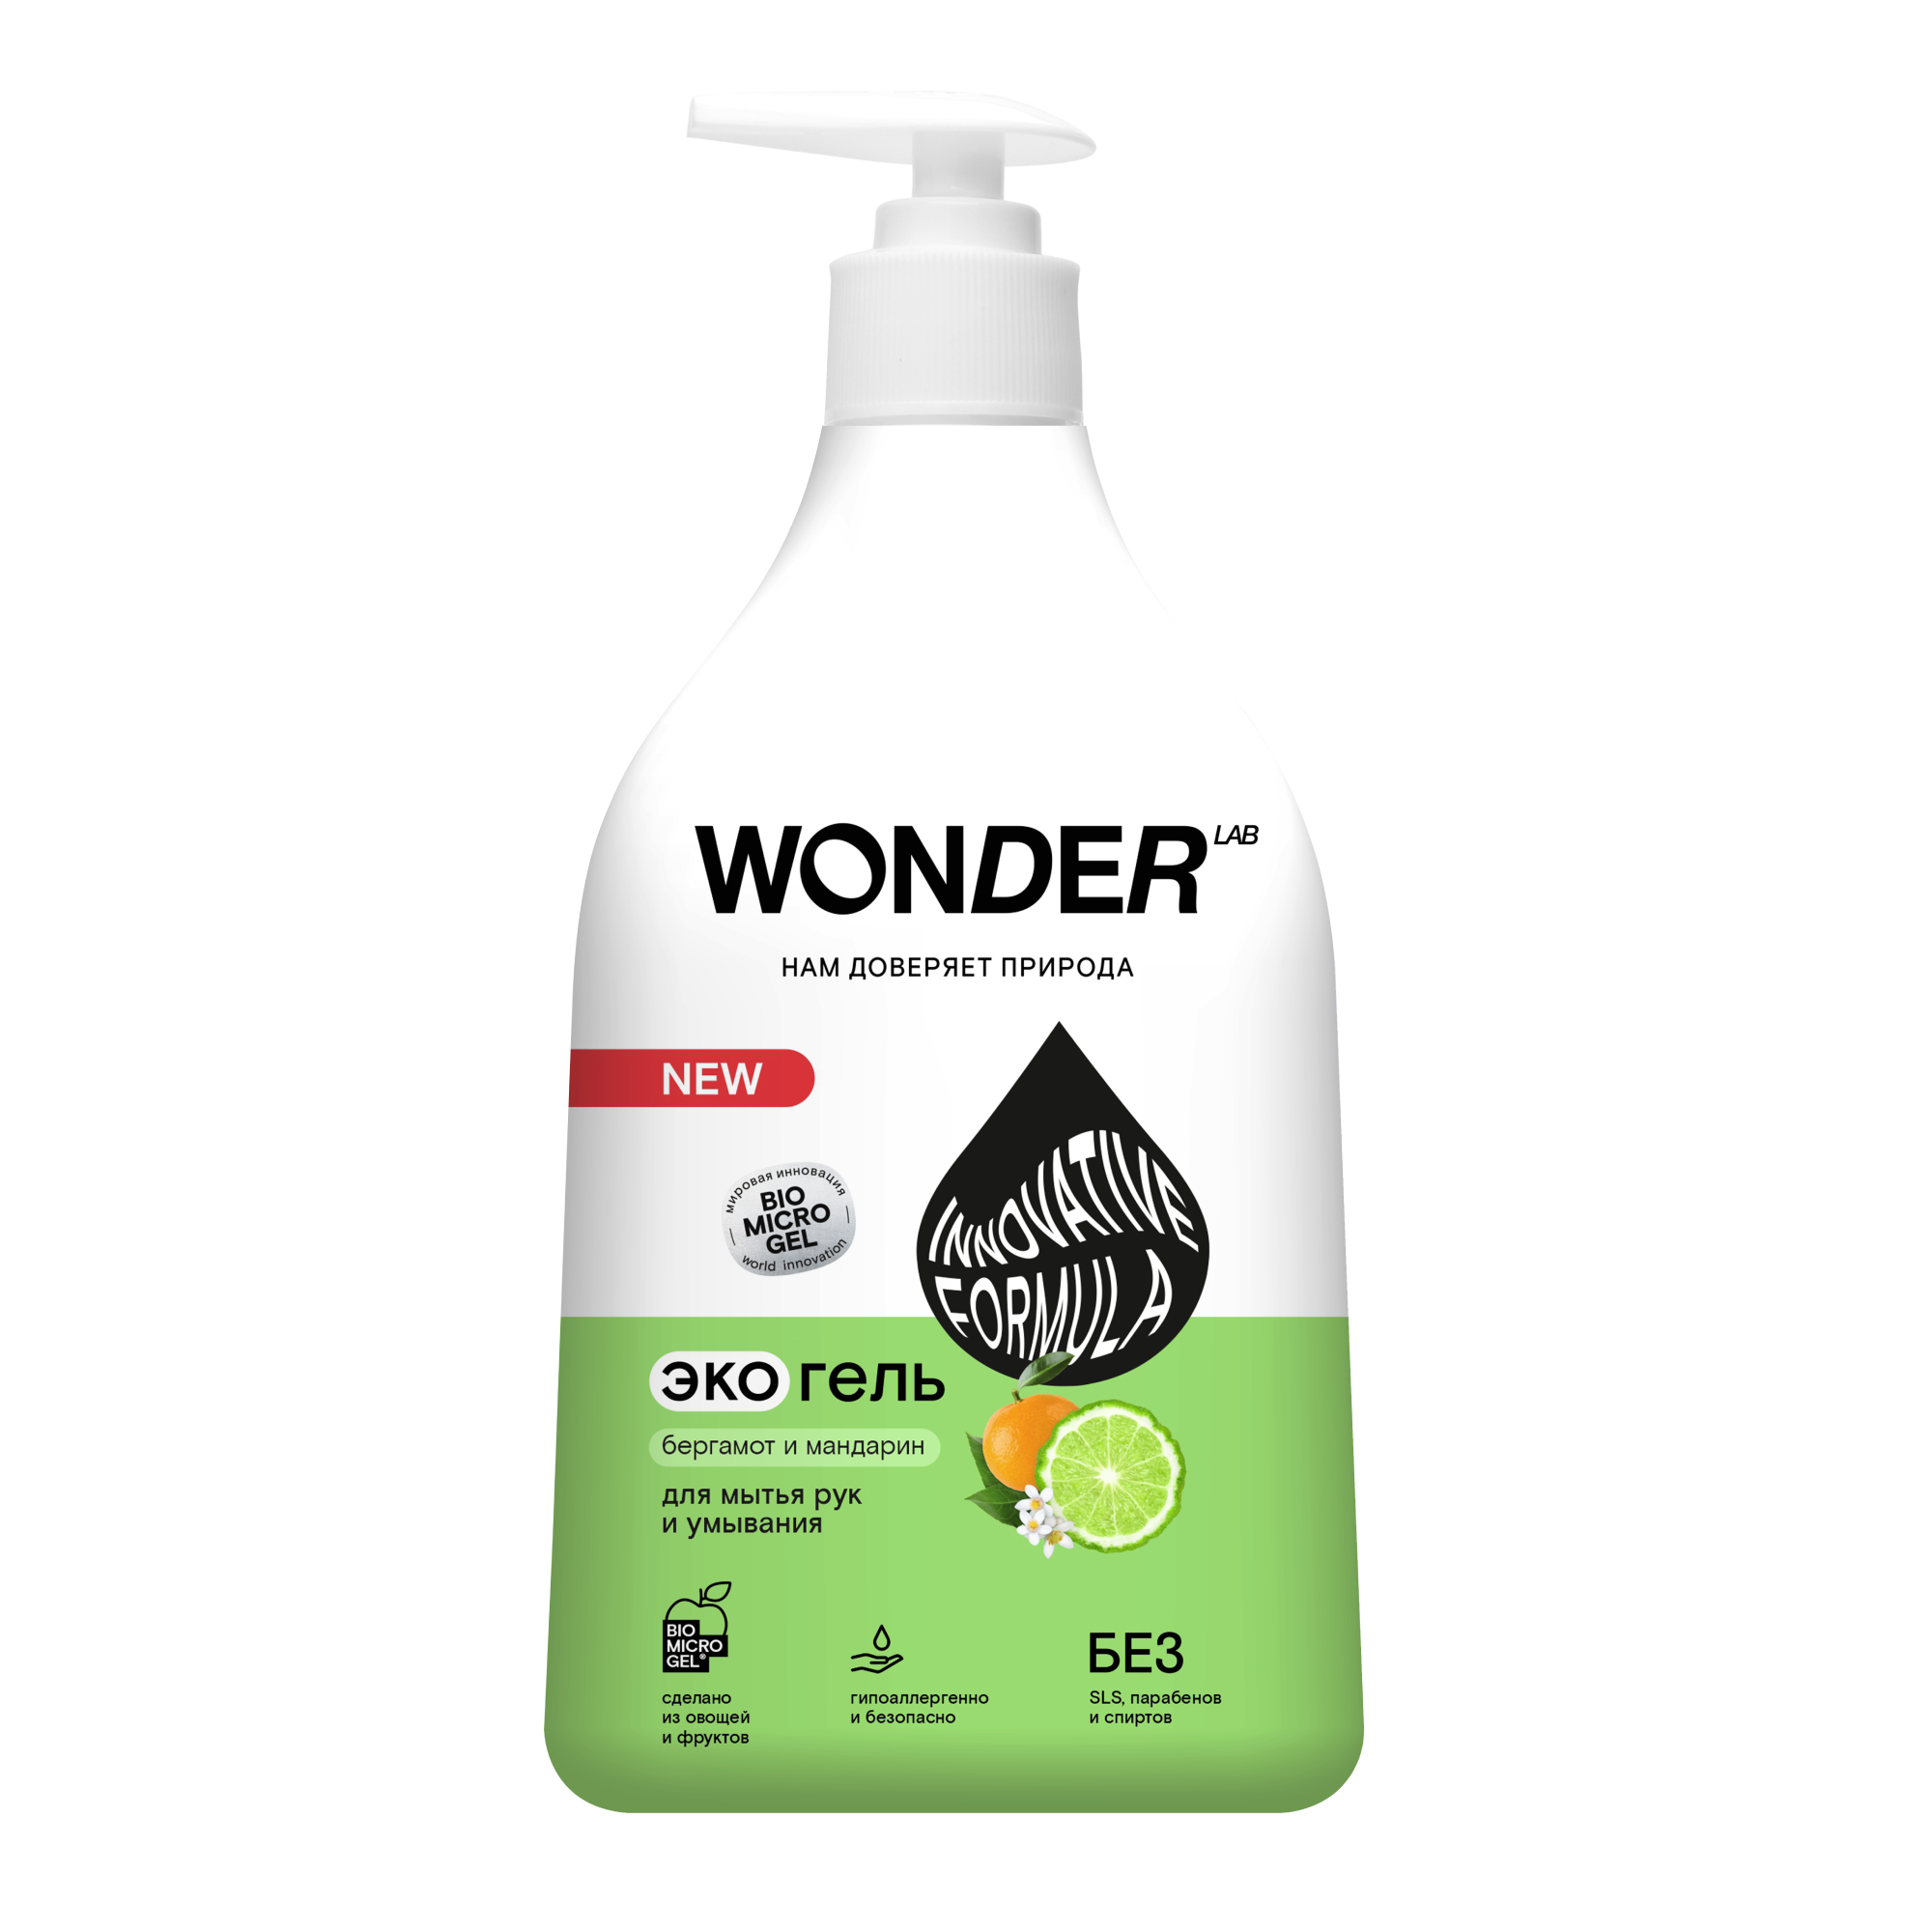 Жидкое мыло для рук и умывания WONDER LAB, экологичное, Бергамот и мандарин, 540 мл экогель wonder lab для мытья рук и умывания розовые персики 3 78 л